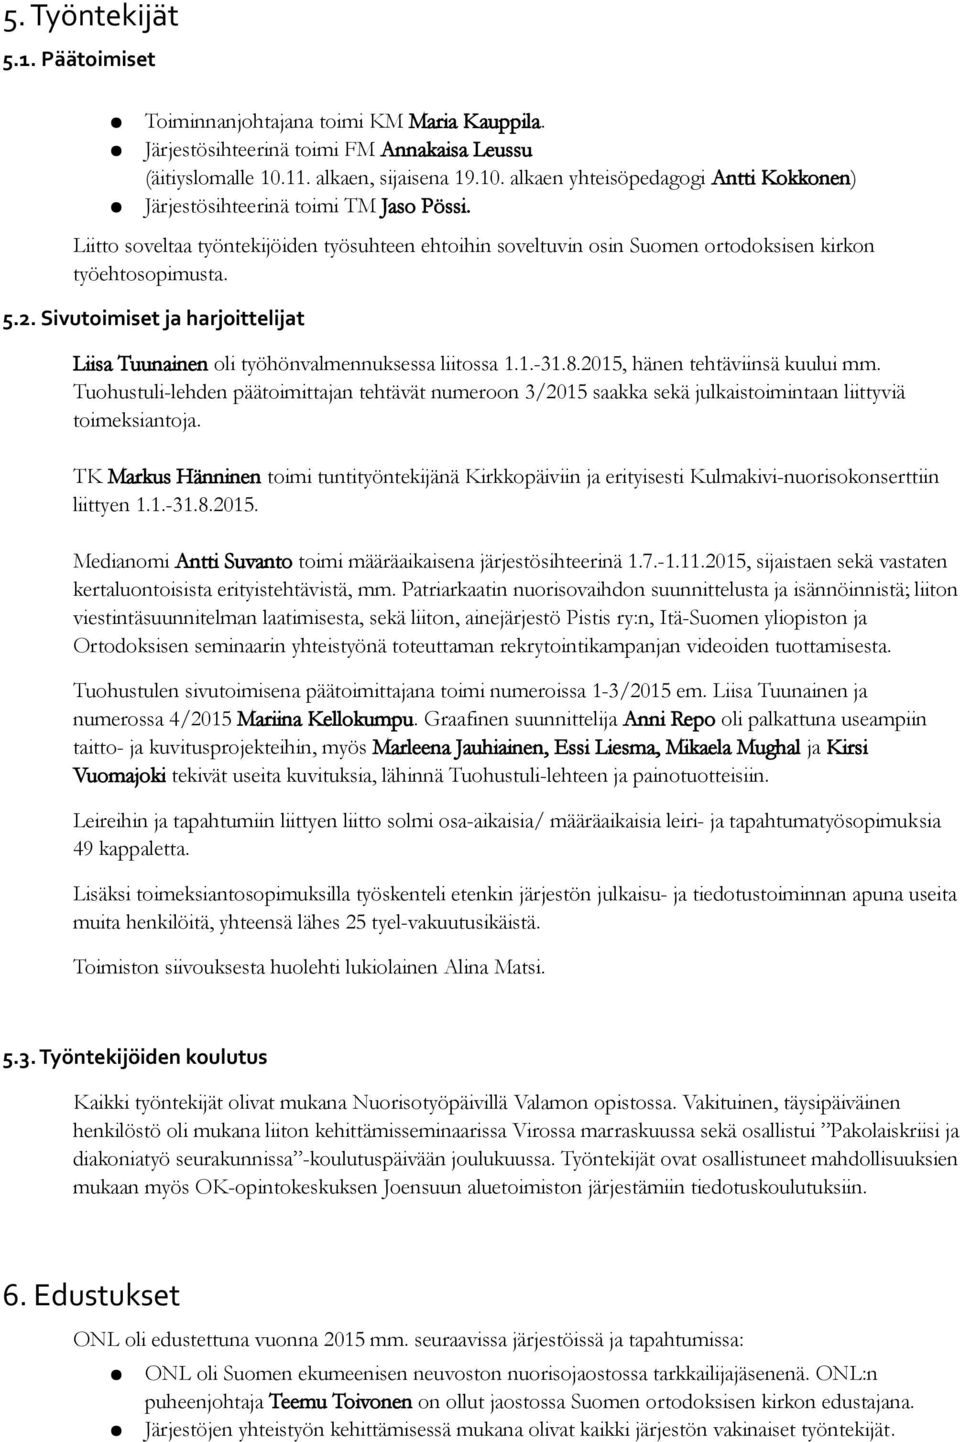 Liitto soveltaa työntekijöiden työsuhteen ehtoihin soveltuvin osin Suomen ortodoksisen kirkon työehtosopimusta. 5.2. Sivutoimiset ja harjoittelijat Liisa Tuunainen oli työhönvalmennuksessa liitossa 1.